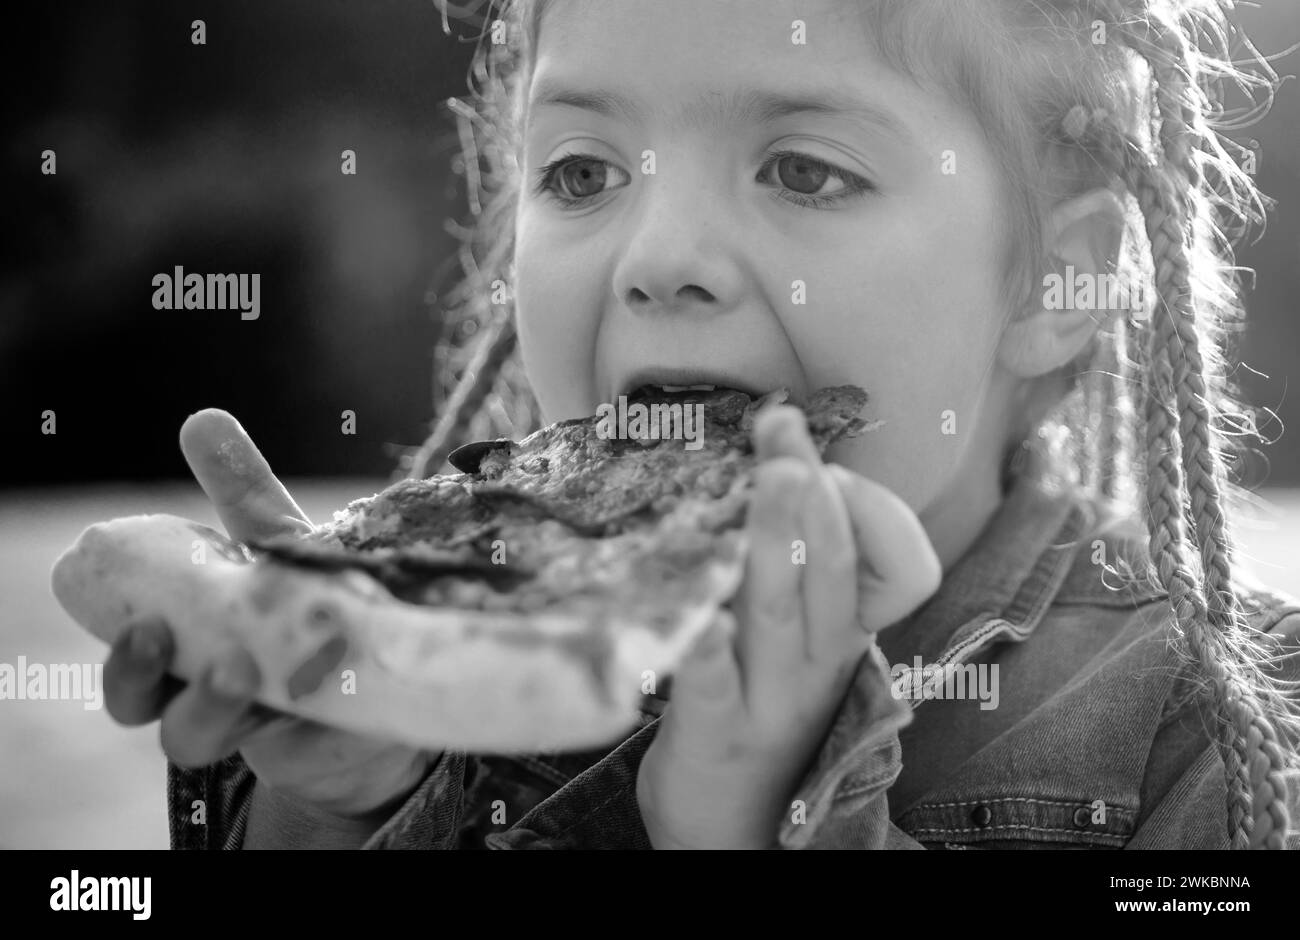 Kinder lieben Essen. Leckere Pizza. Kinder essen Pizza. Fastfood. Italienisches Junkfood. Kleines Mädchen, das im Freien zu Mittag gegessen hat. Stockfoto